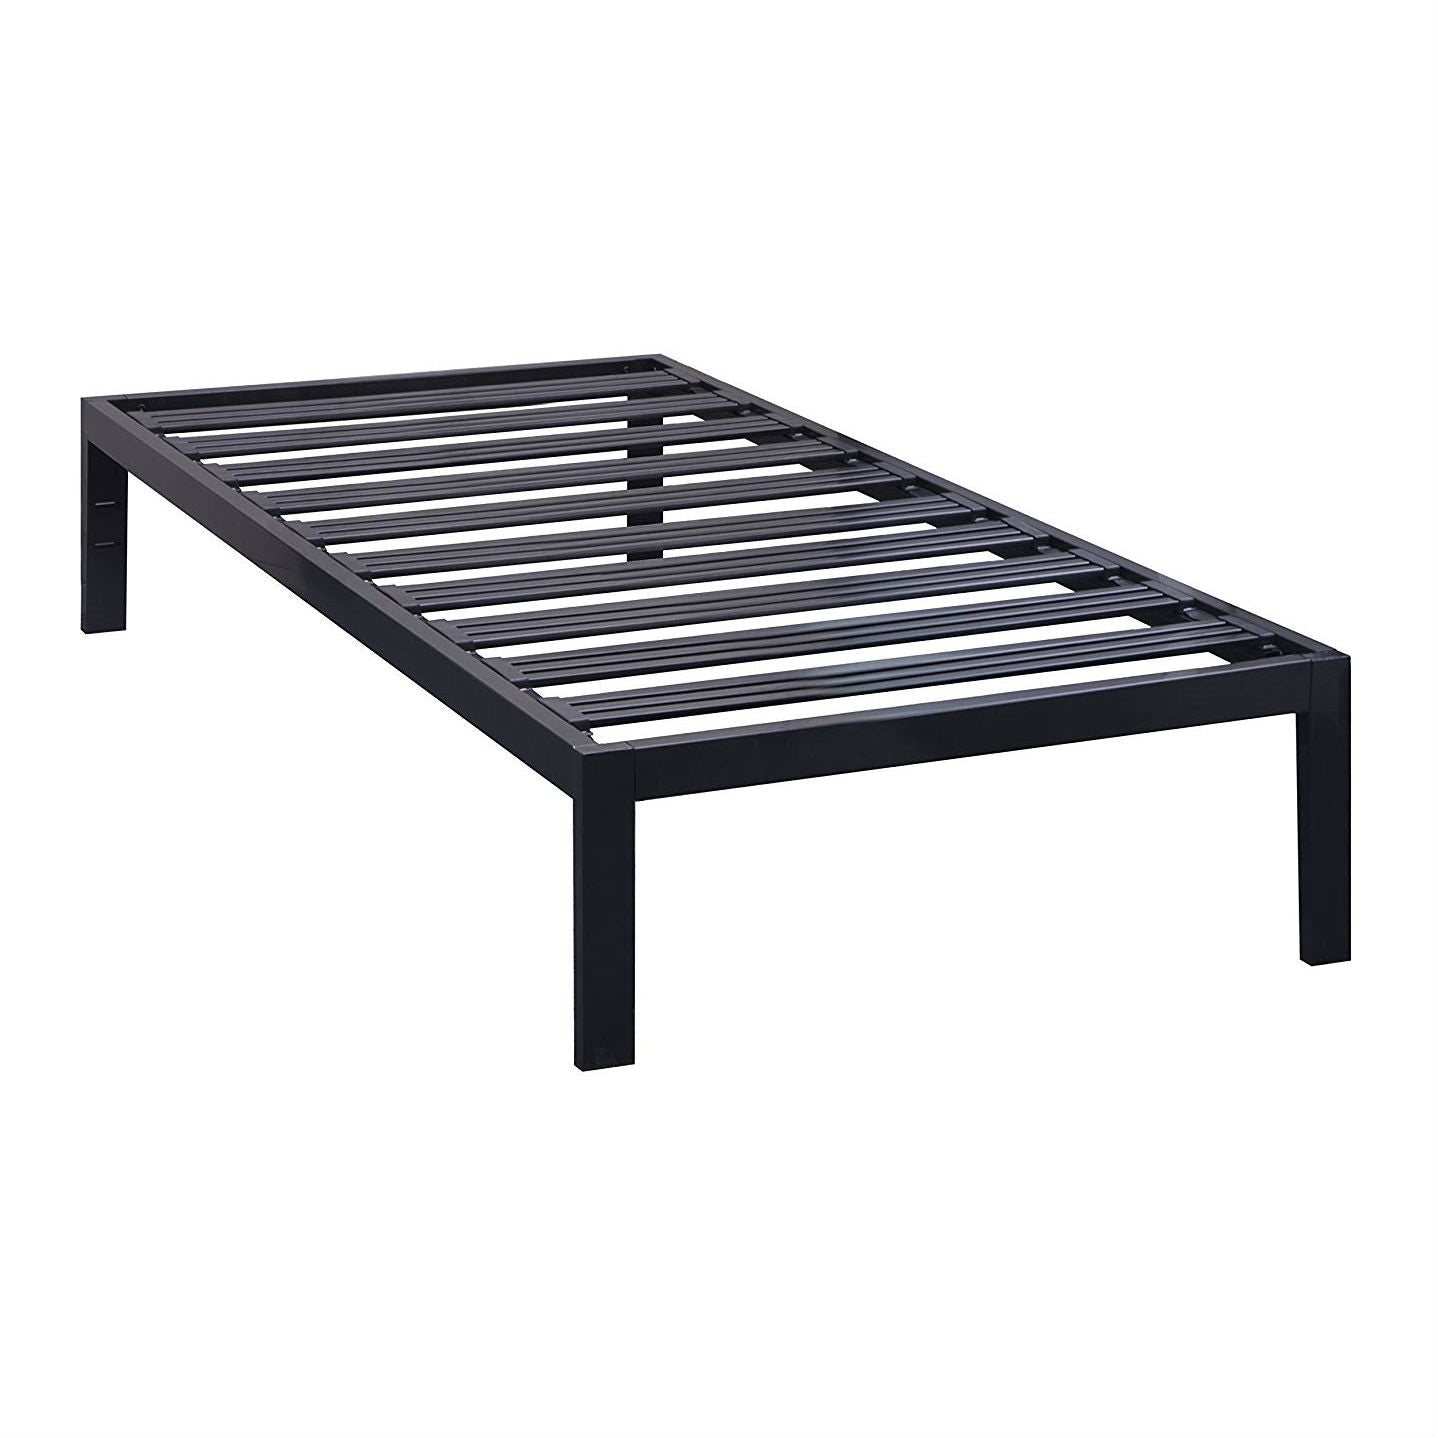 Bedroom > Bed Frames > Platform Beds - Twin XL Heavy Duty Wide Slat Steel Platform Bed Frame In Black Metal Finish